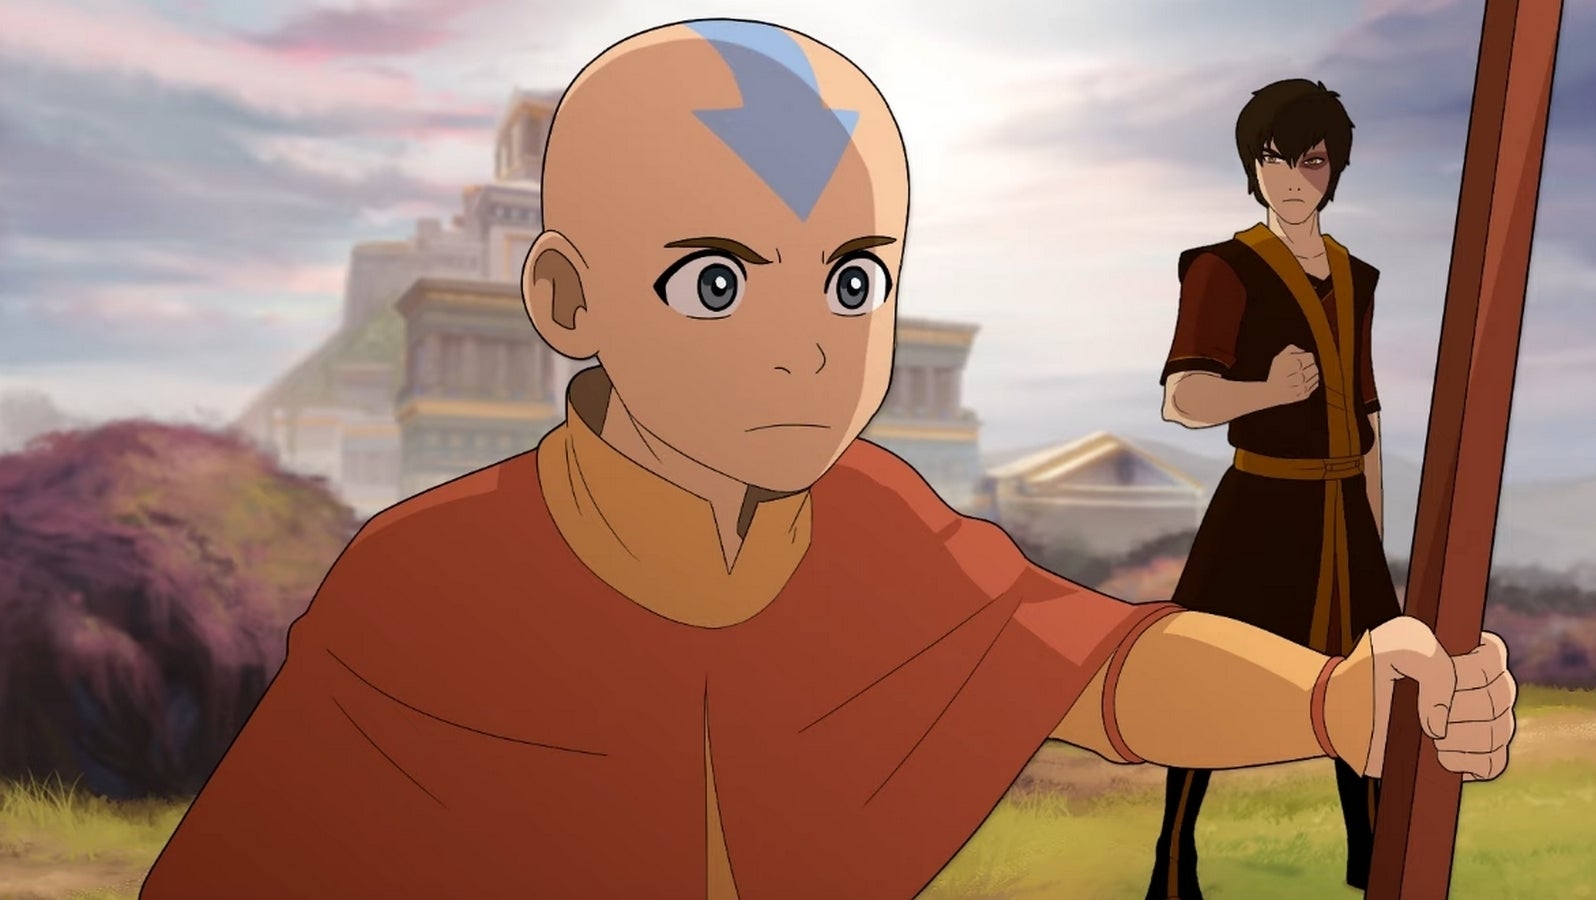 Bilder zu Smite: Charaktere aus Avatar und Die Legende von Korra kommen ins Spiel